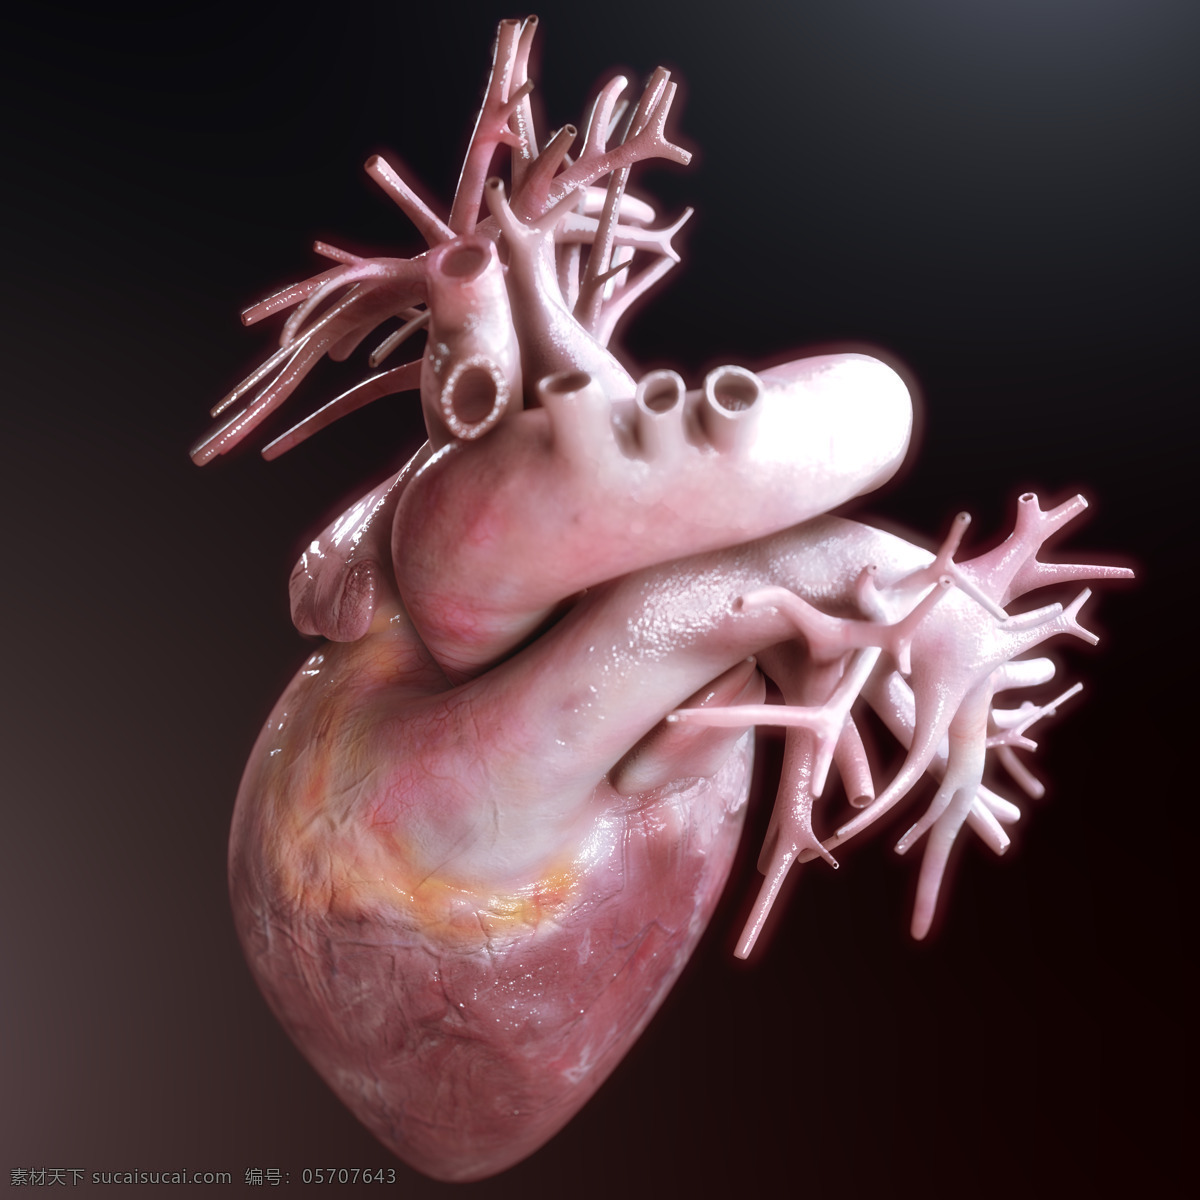 心脏 血管 模型 心脏血管模型 人体器官 心脏模型 心血管 内脏 医疗素材 人体器官图 人物图片